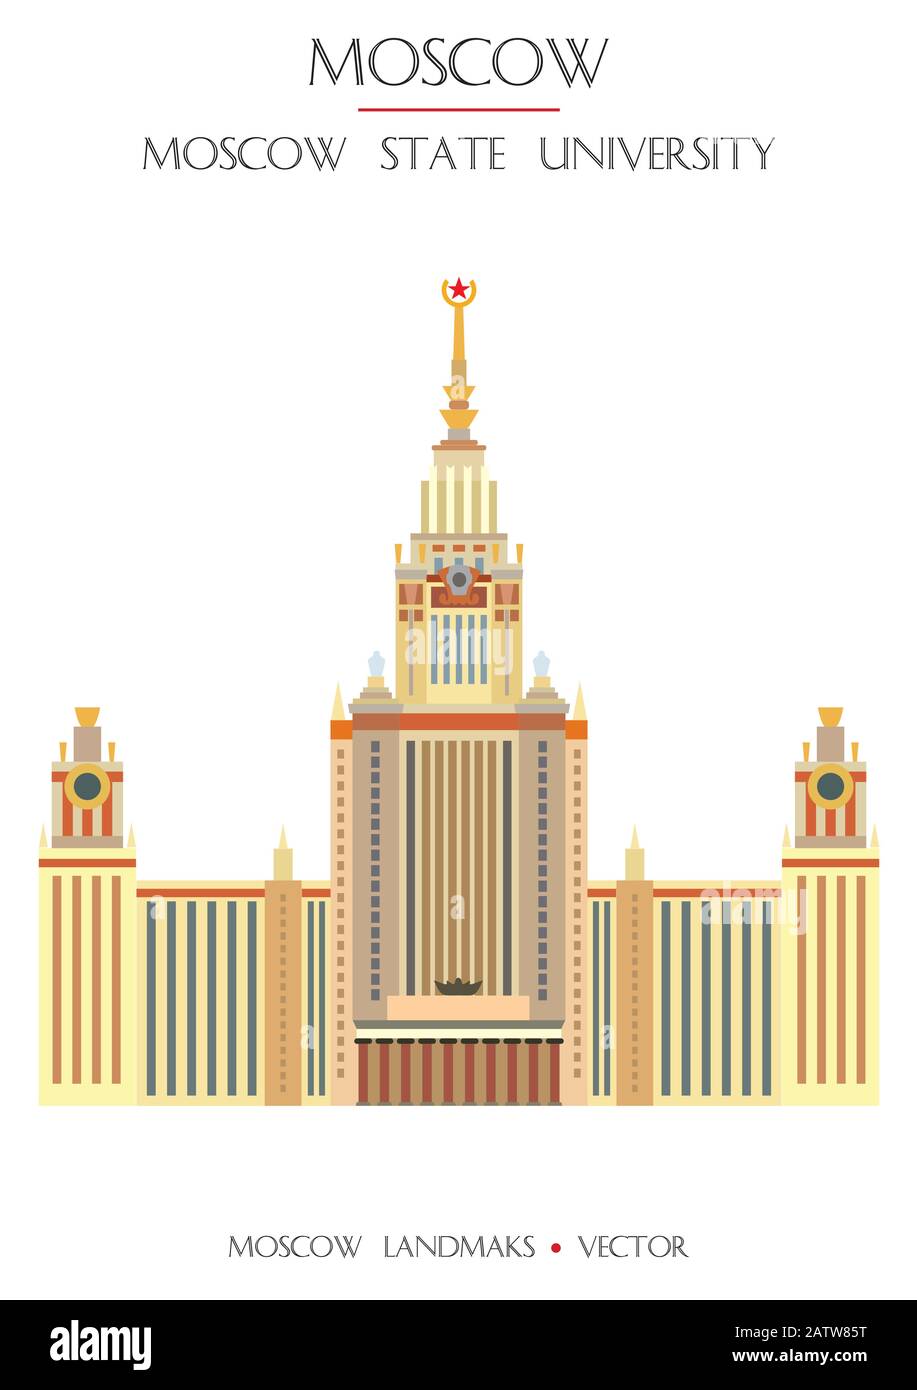 Farbenfroher Vektor Moskauer Staatsuniversität, berühmtes Wahrzeichen Moskaus, Russland. Vektor-Flachdarstellung isoliert auf weißem Hintergrund. Abbildung des Lagerbestands Stock Vektor